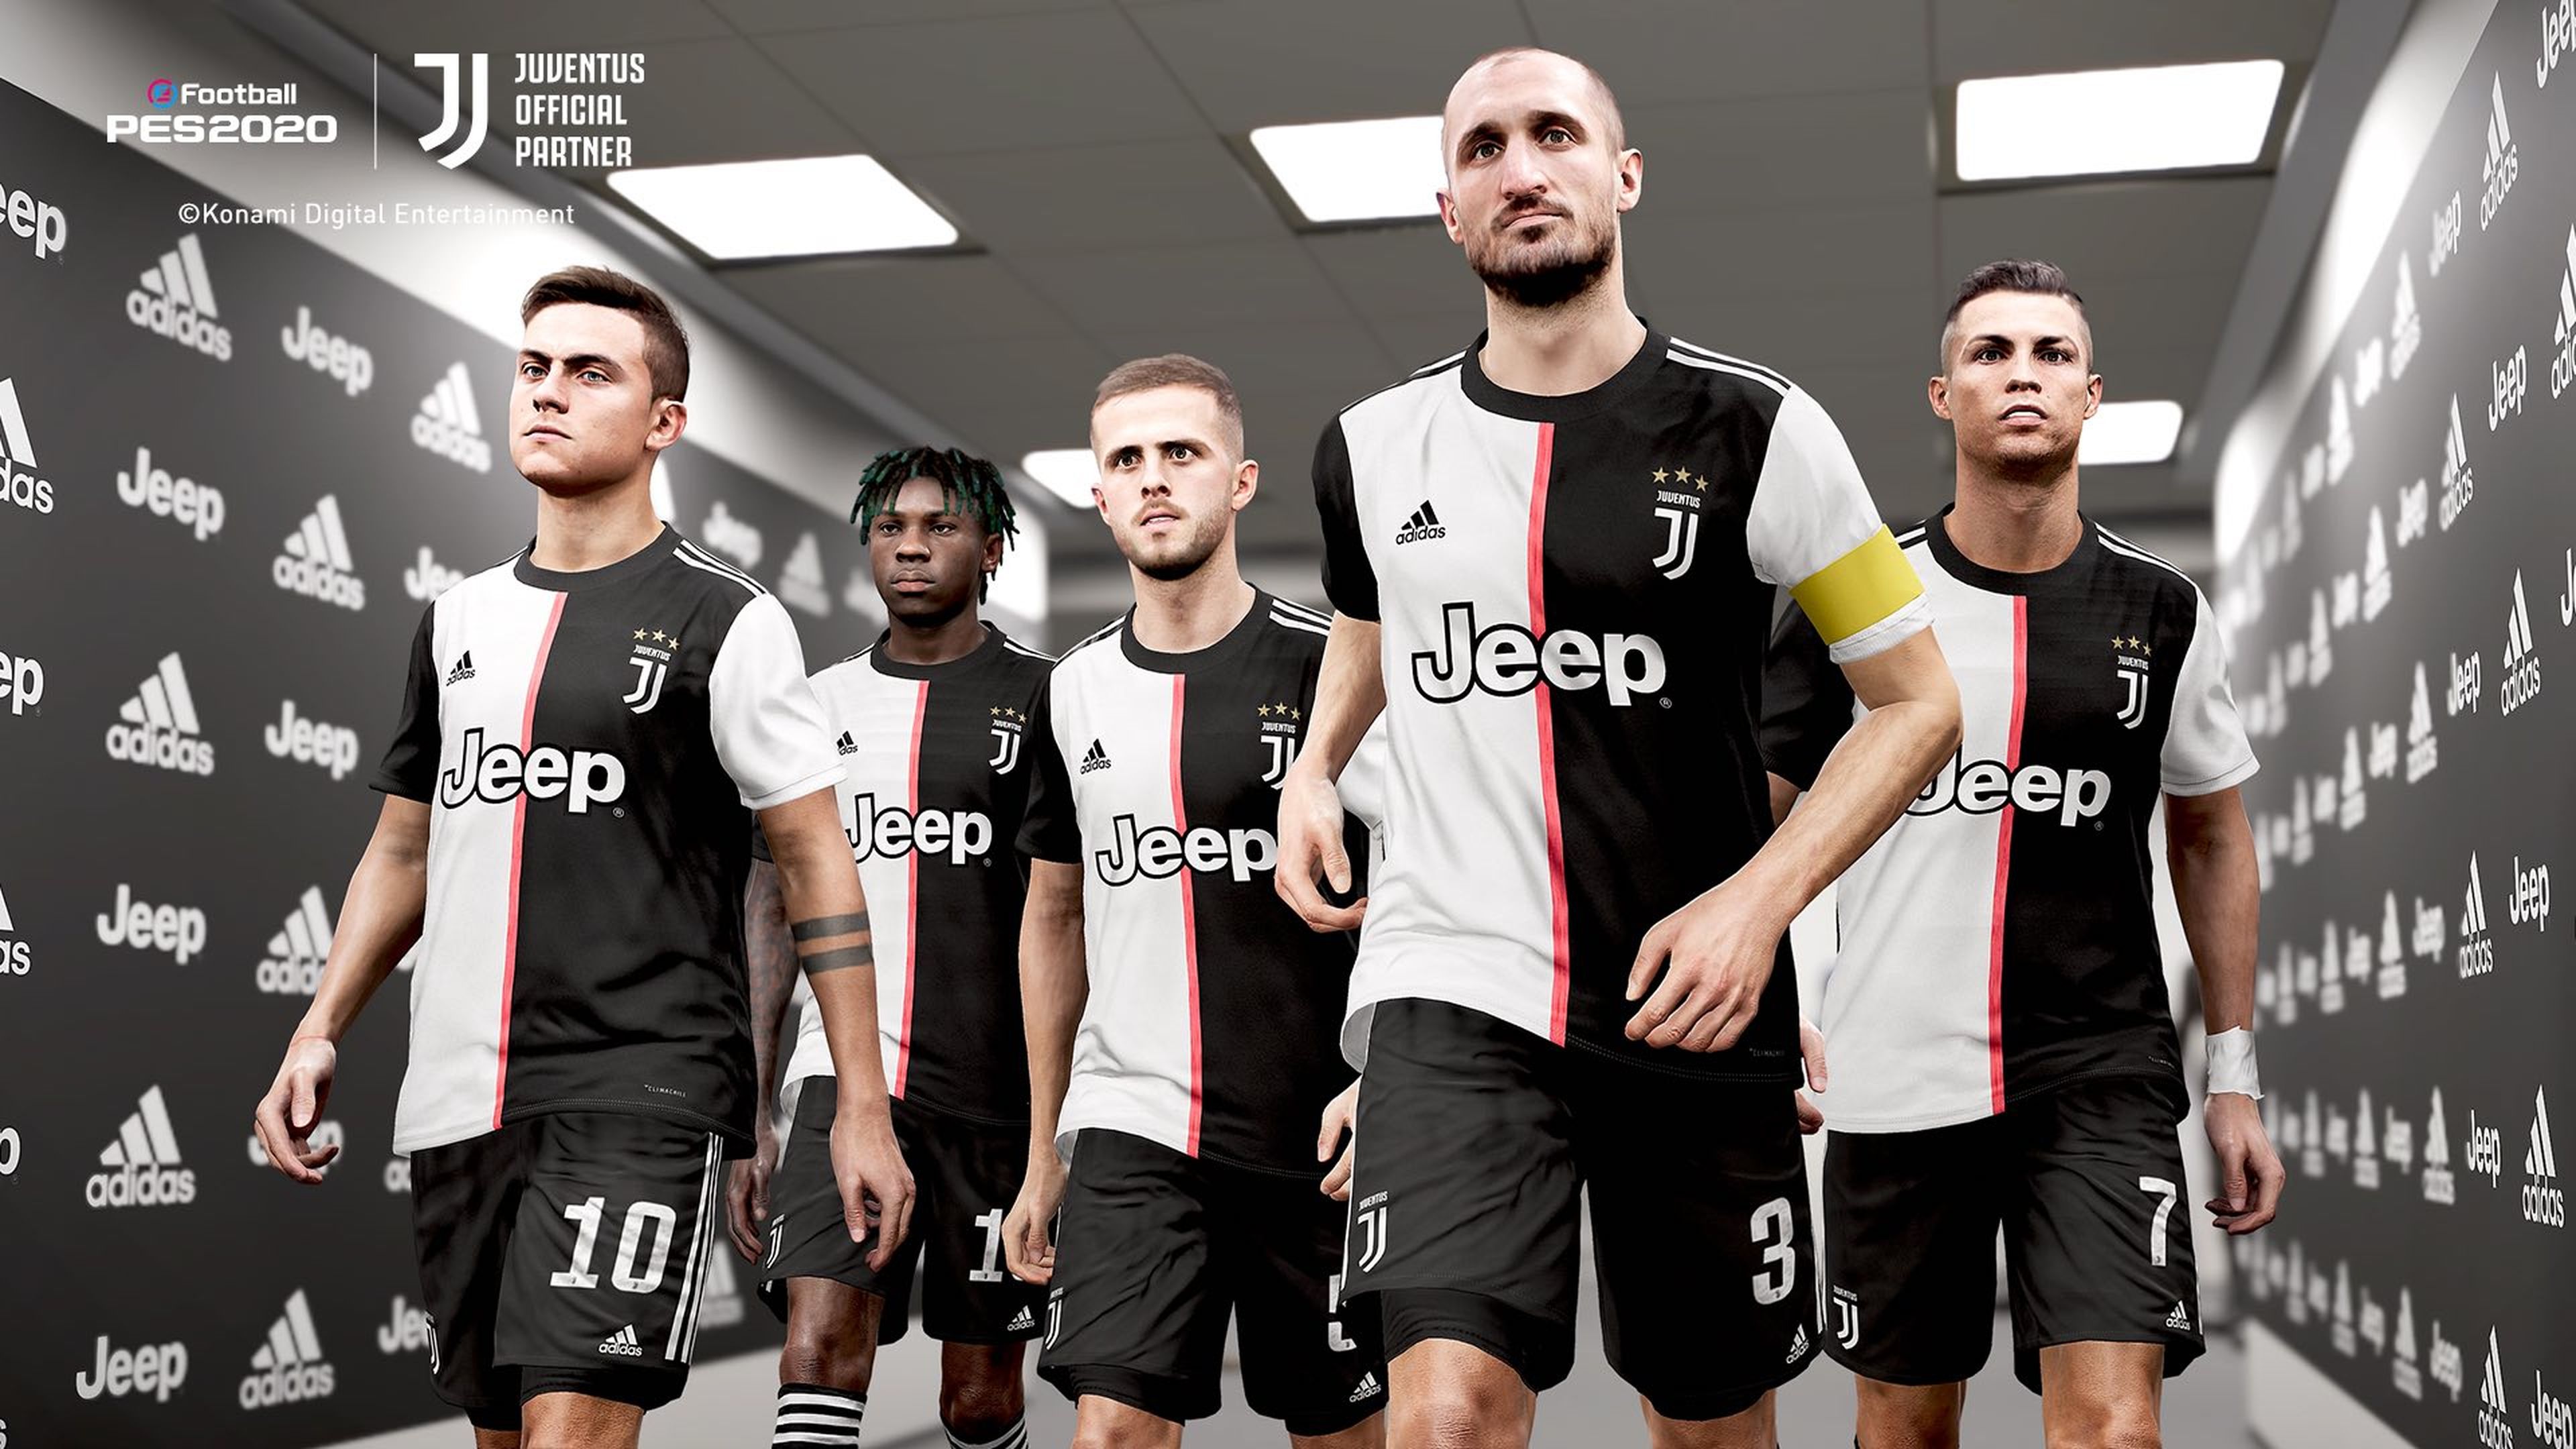 eFootball PES 2020 Juventus